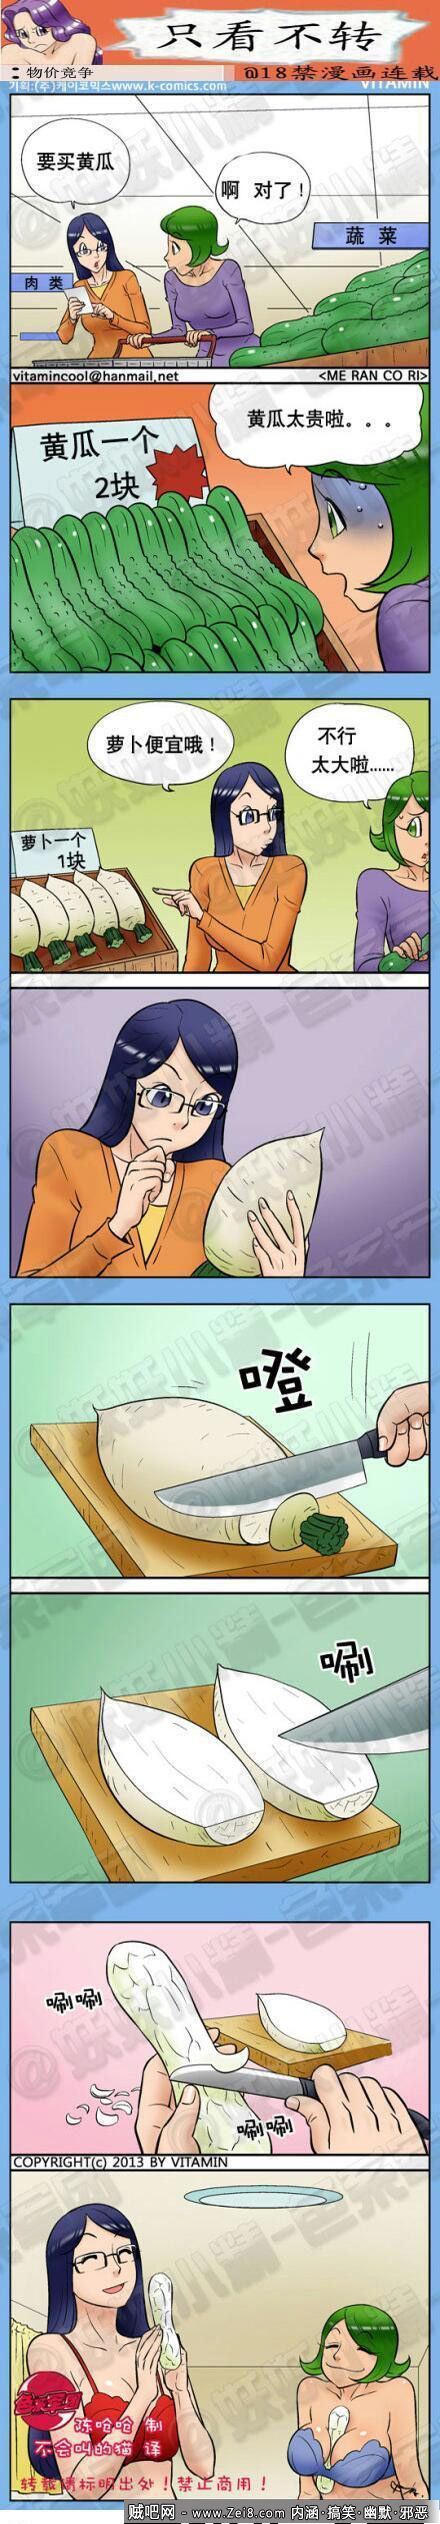 [韩国色系黄瓜漫画]：自行改造